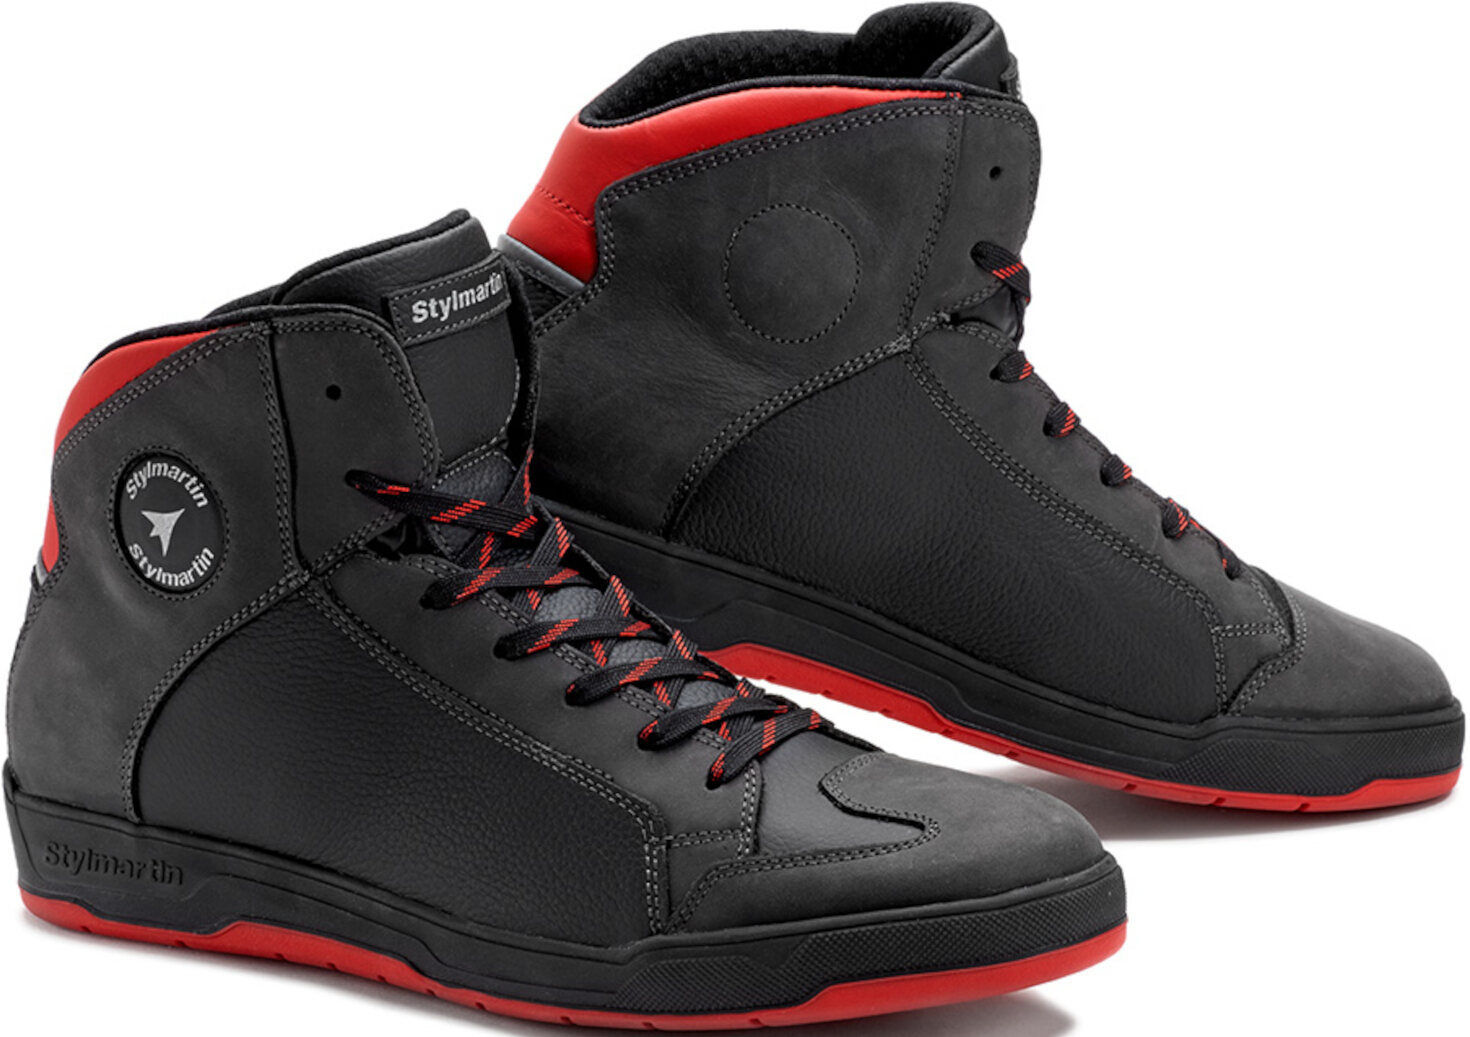 Stylmartin Double Zapatos de motocicleta impermeables - Negro Rojo (46)